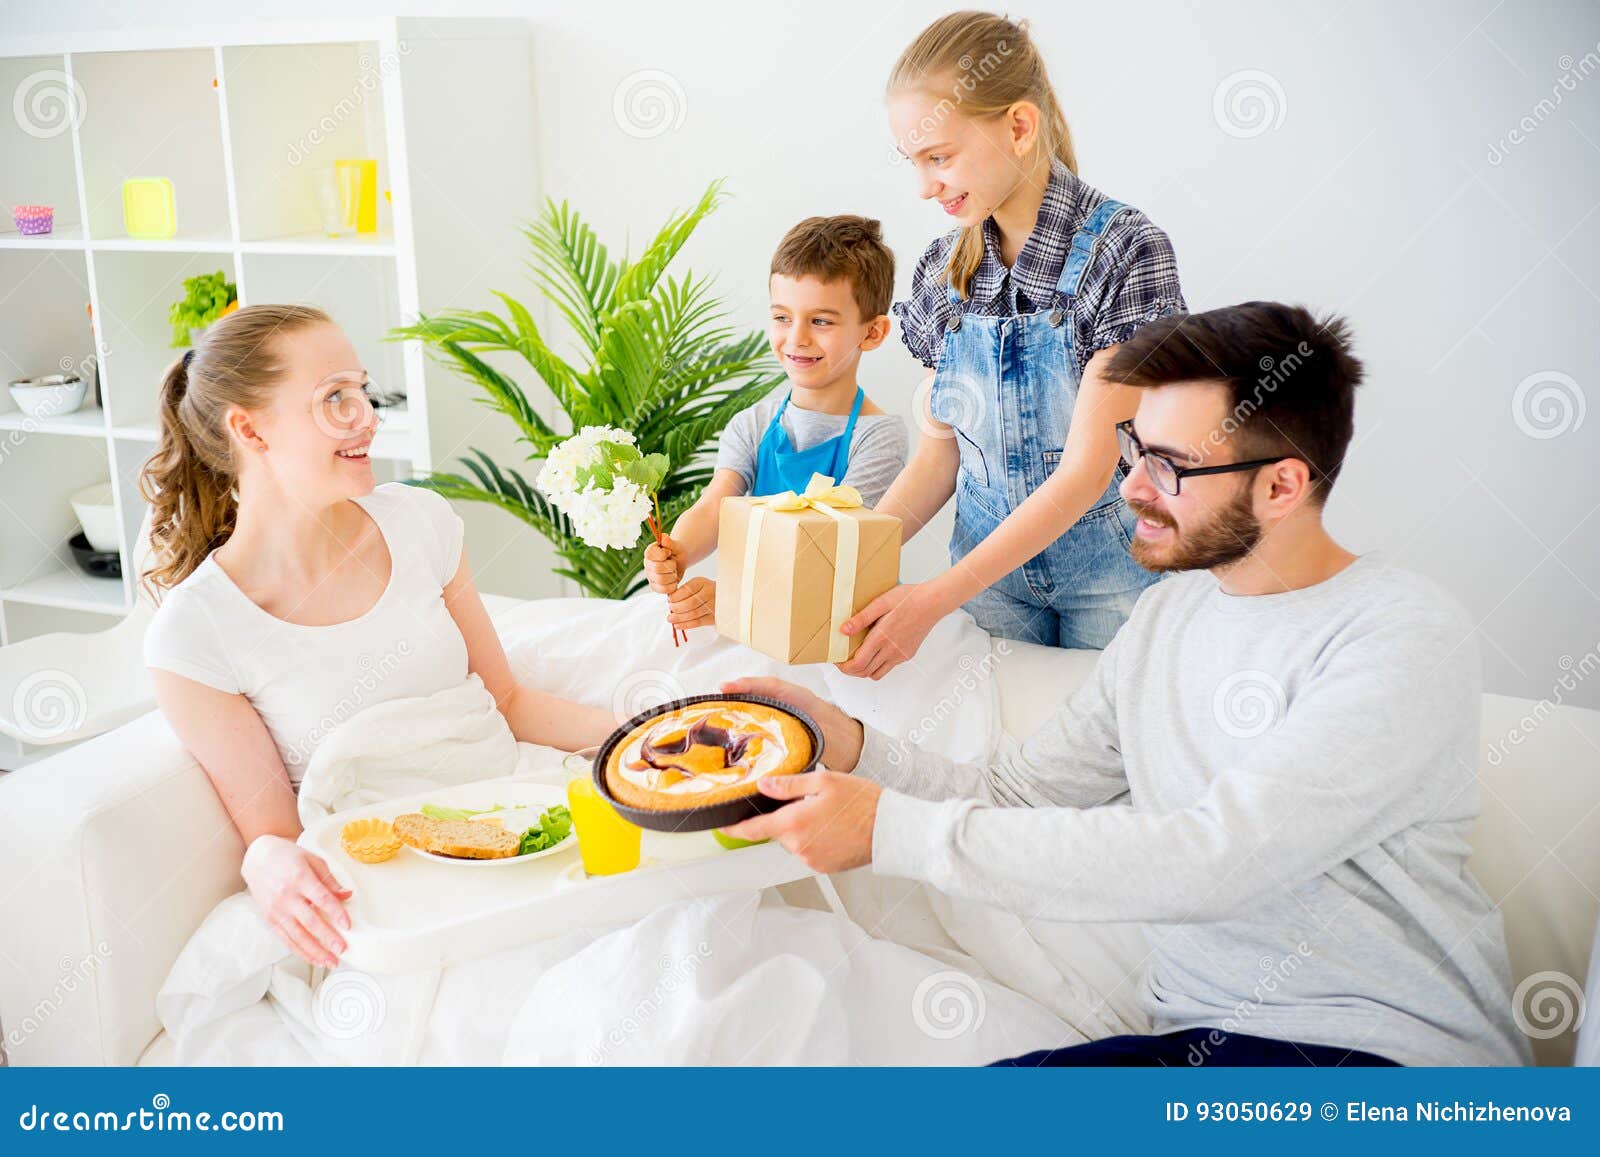 Позавтракав мама и папа отправились за покупками. Завтрак в постель маме. Дети принесли маме завтрак. Ребёнок приносит маме завтрак в постель. Мама и дети завтрак в кровати.